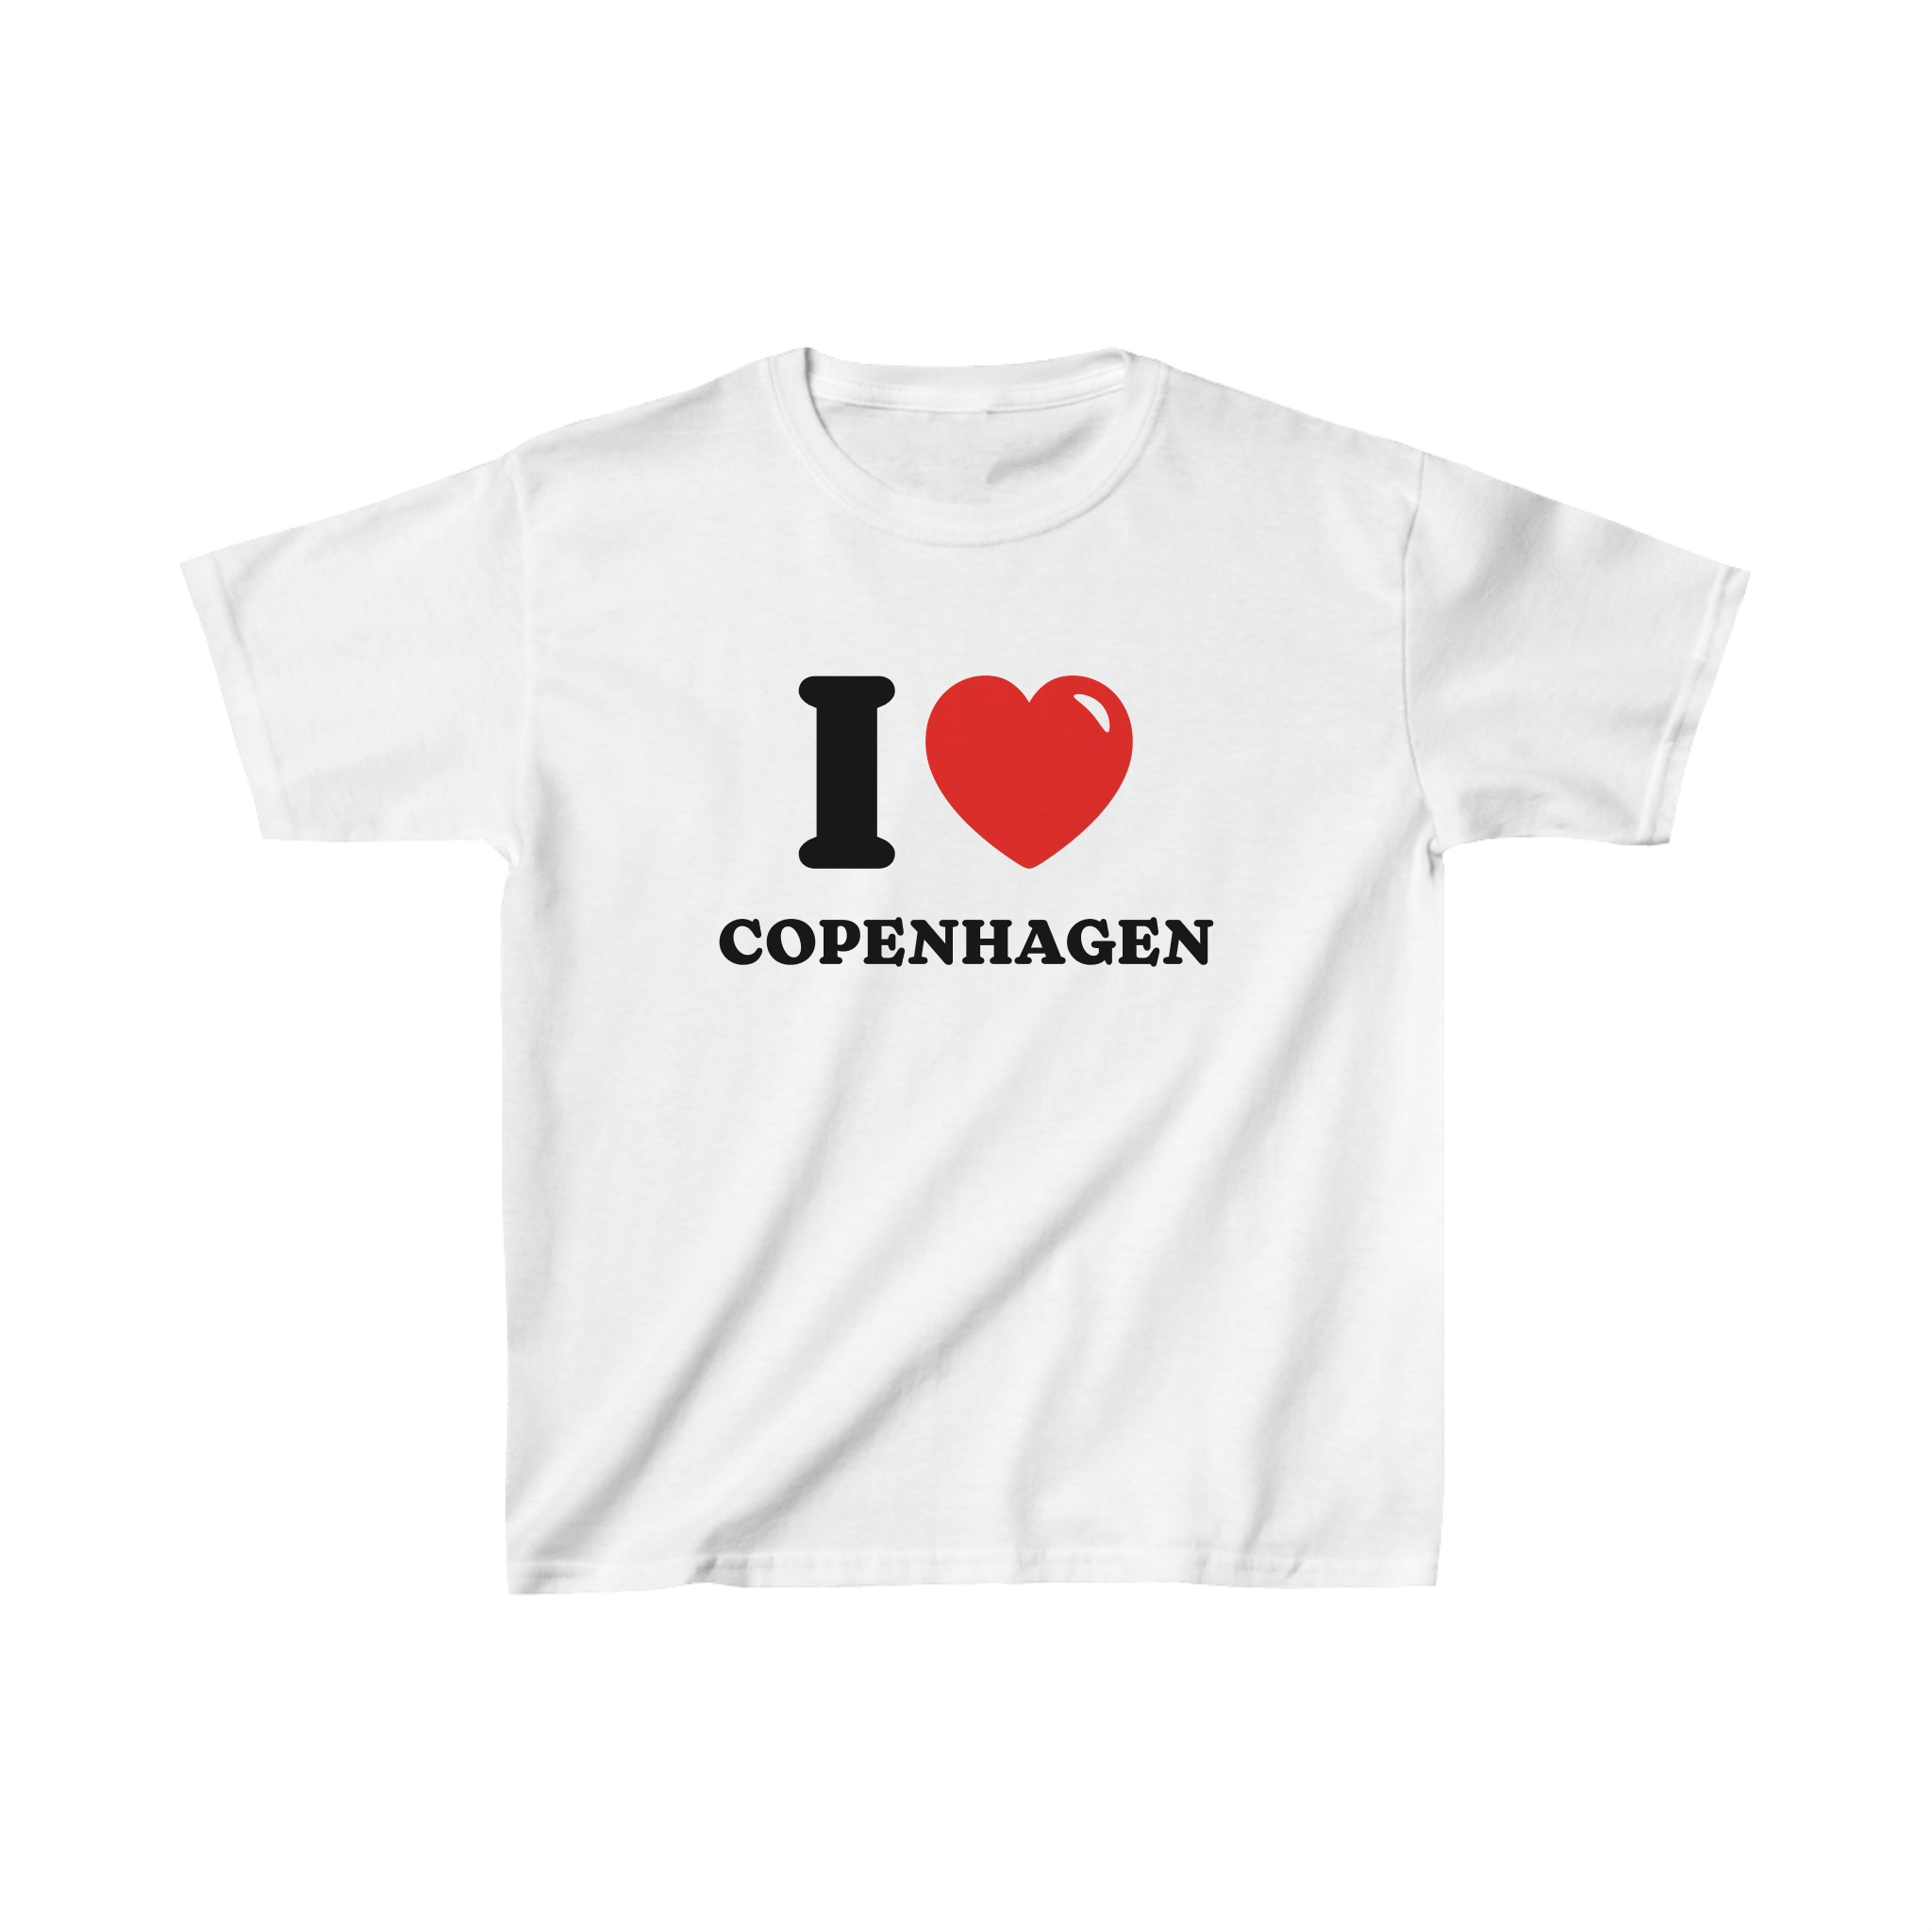 'I love Copenhagen' baby tee - In Print We Trust